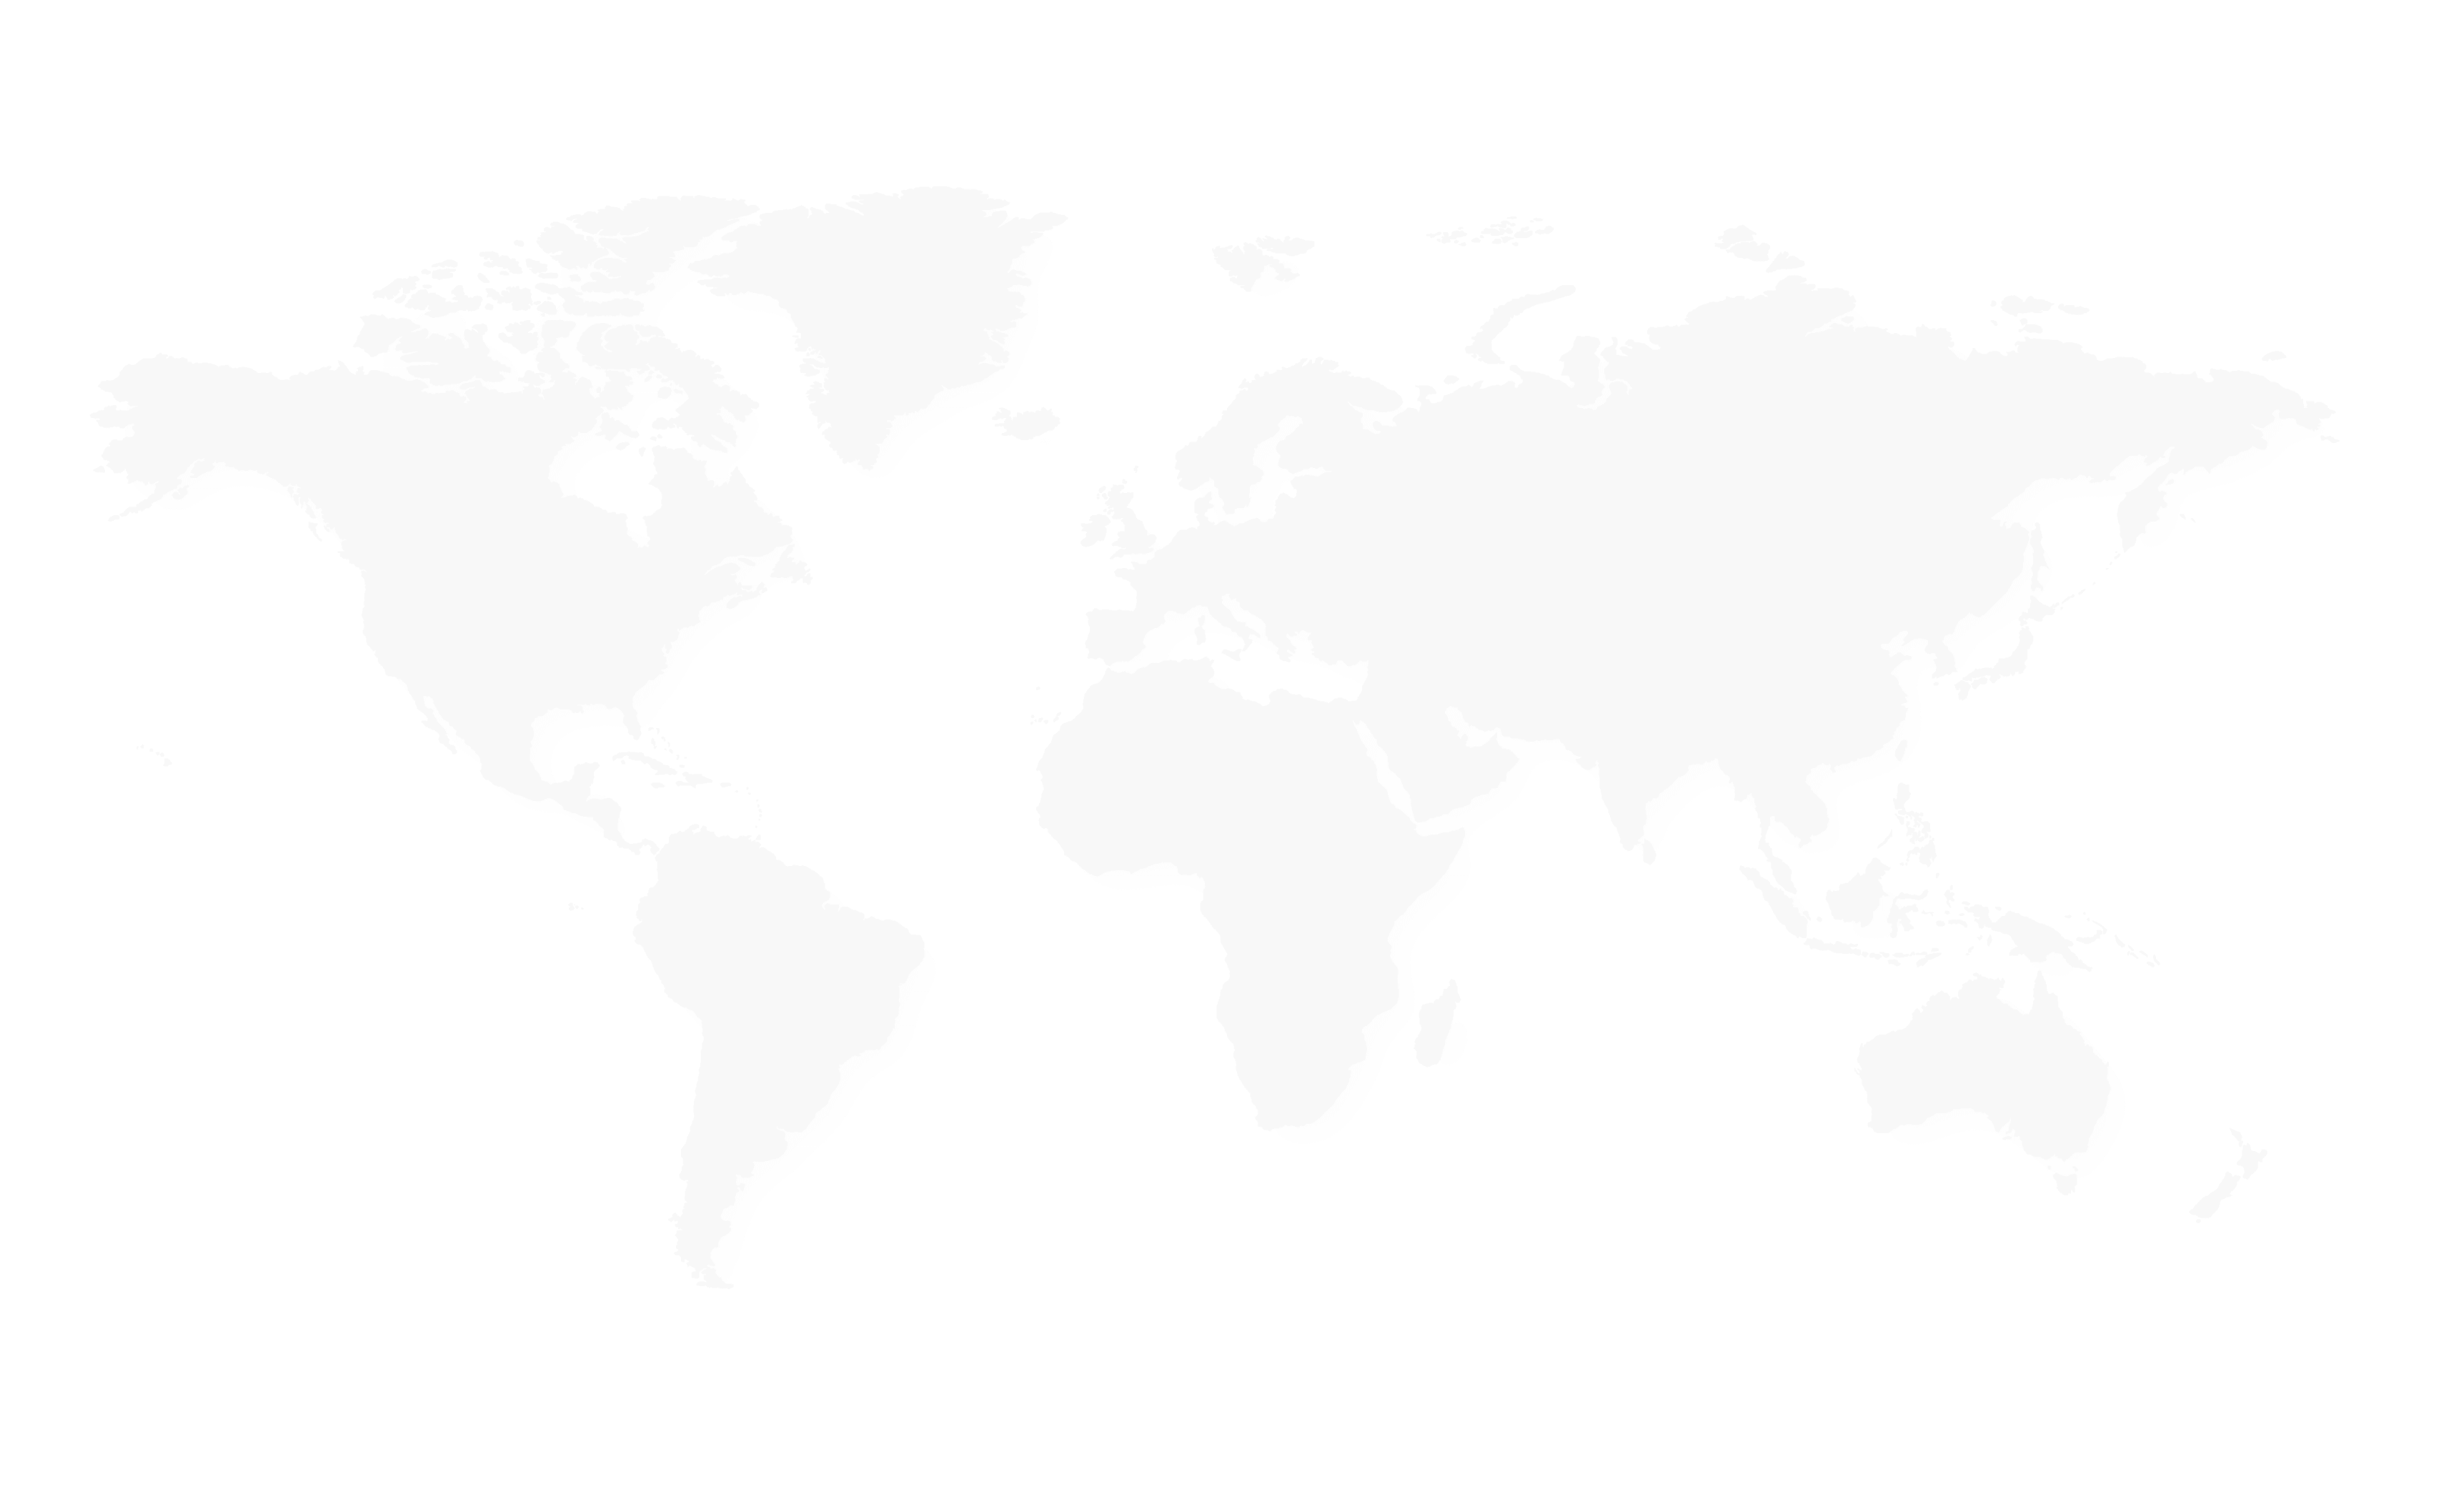 World map background image